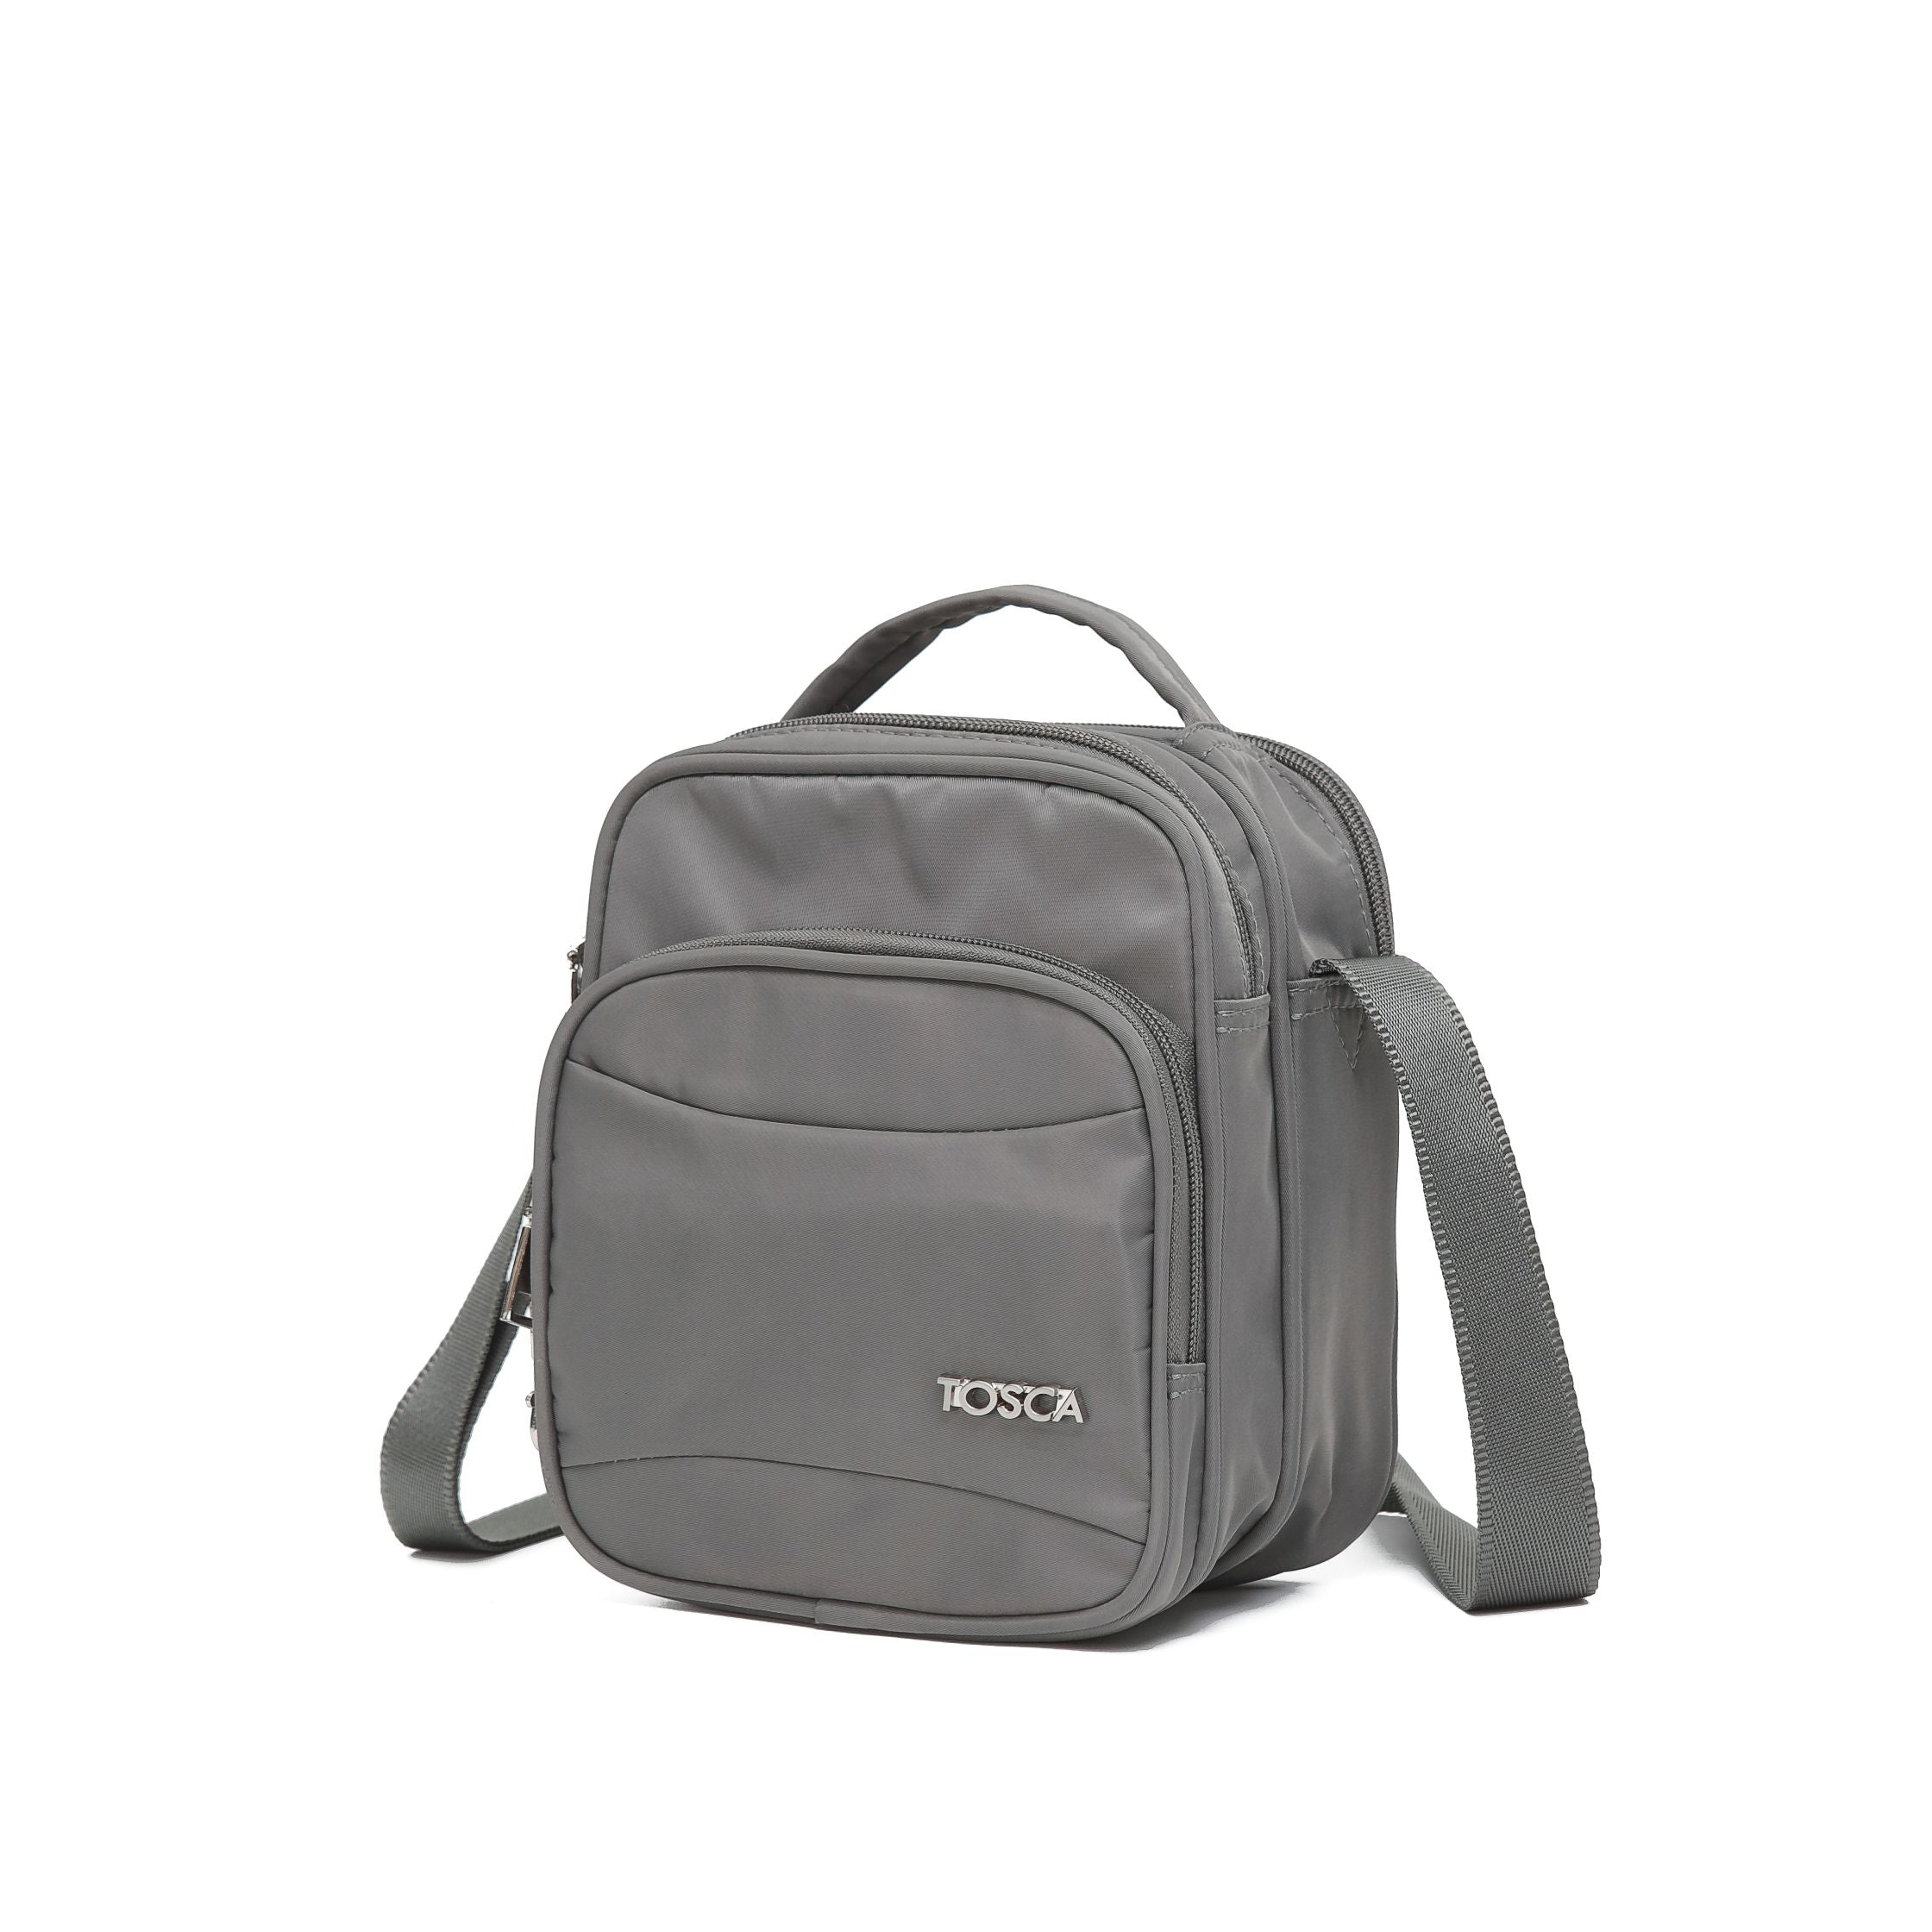 Tosca - TCA955 Small Anti Theft shoulder bag - Khaki-1